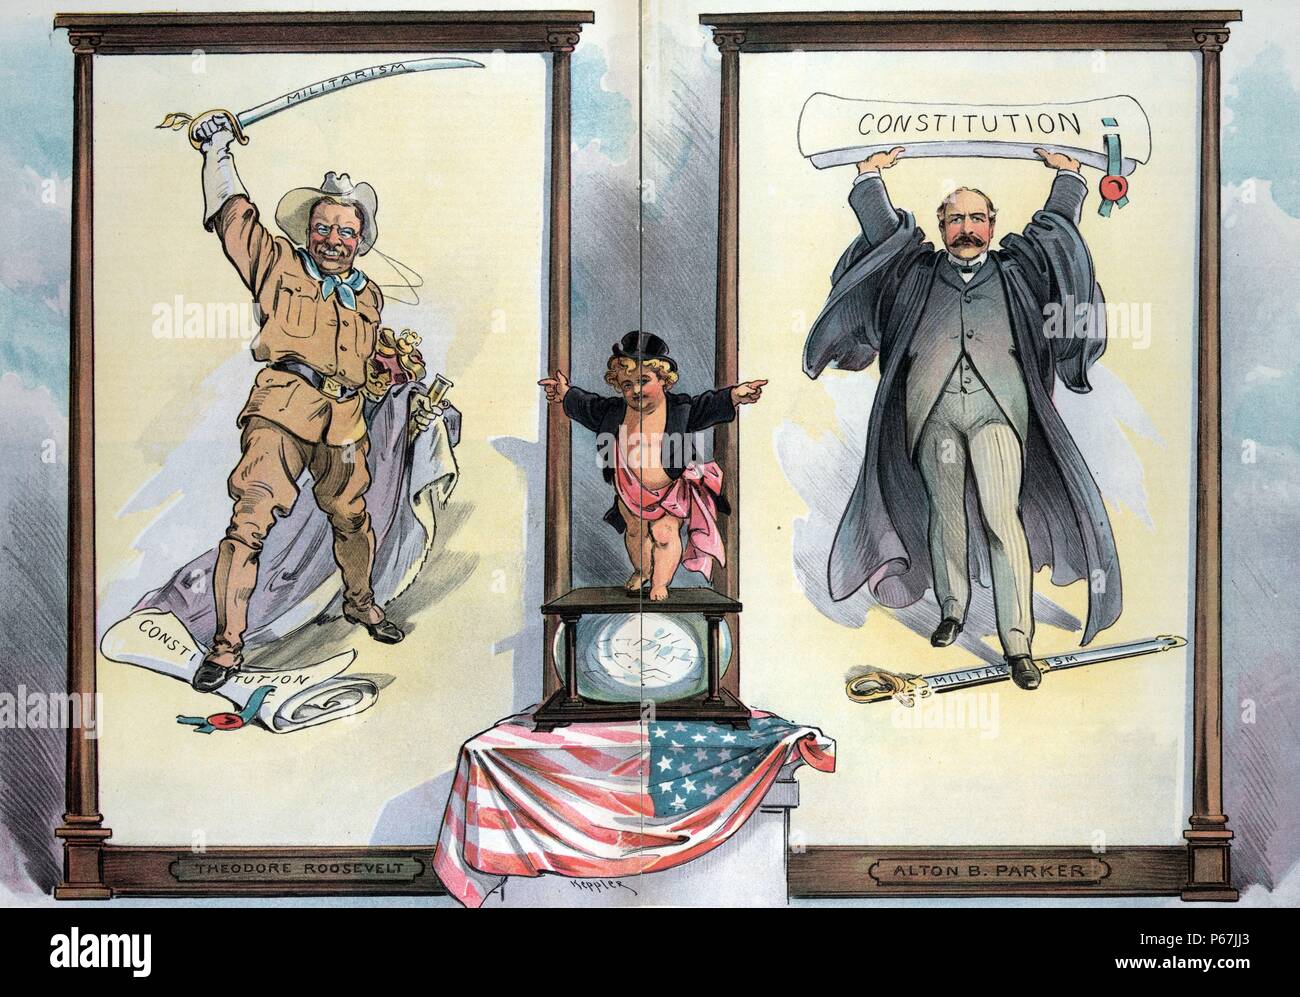 Prendete la vostra scelta, colleghi'' Puck in piedi su un urna elettorale tra il Presidente Theodore Roosevelt, che ha un piede sulla "Costituzione", è sventolare una spada etichettati 'Militarism' in un modo minaccioso sopra la sua testa ed è in possesso di regal accappatoi e una corona con il suo braccio sinistro e Alton B. Parker, che ha un piede su una spada etichettati 'Militarism' ed è holding aloft "Costituzione". Foto Stock